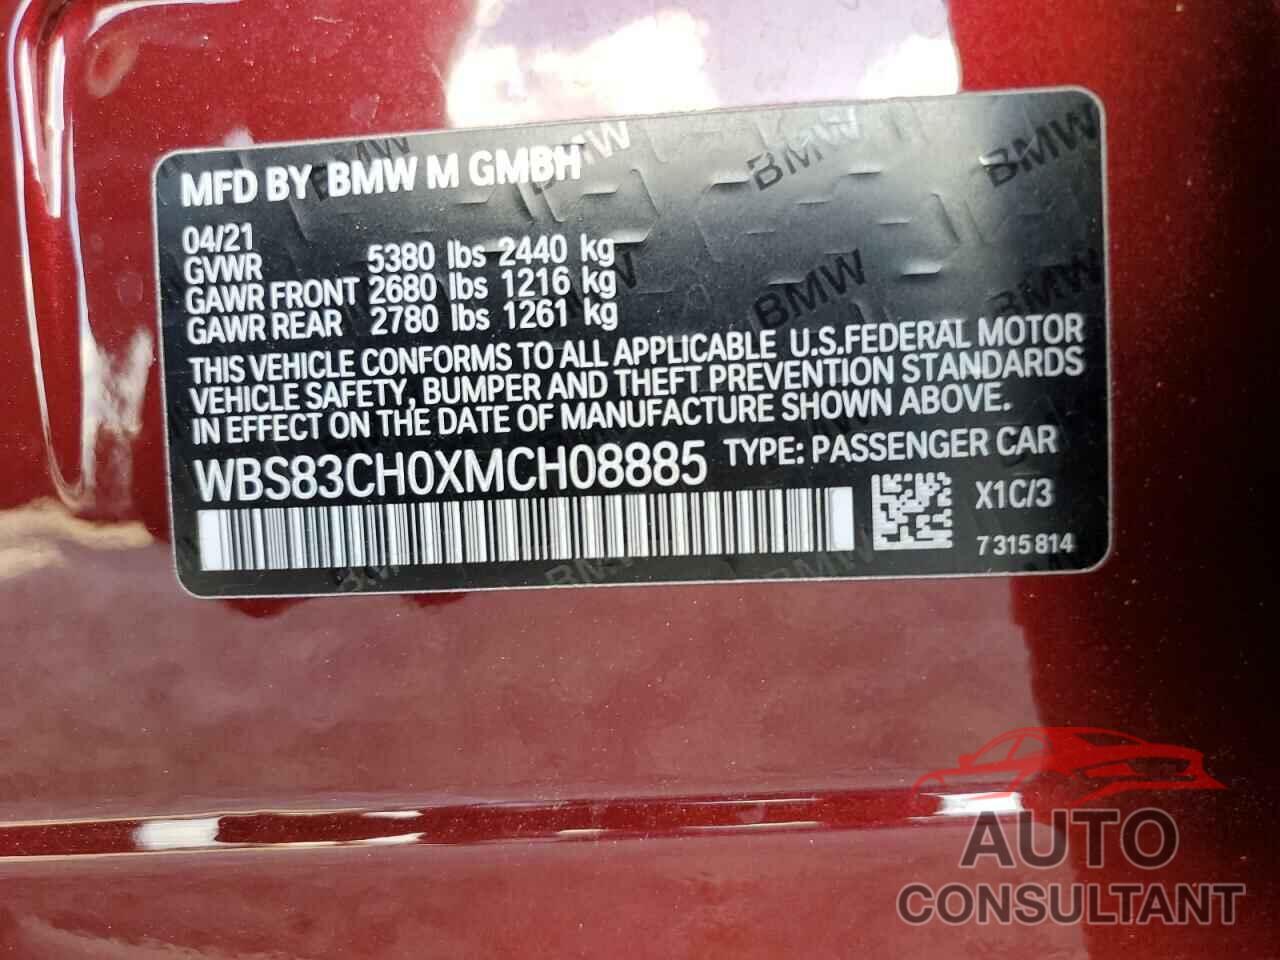 BMW M5 2021 - WBS83CH0XMCH08885